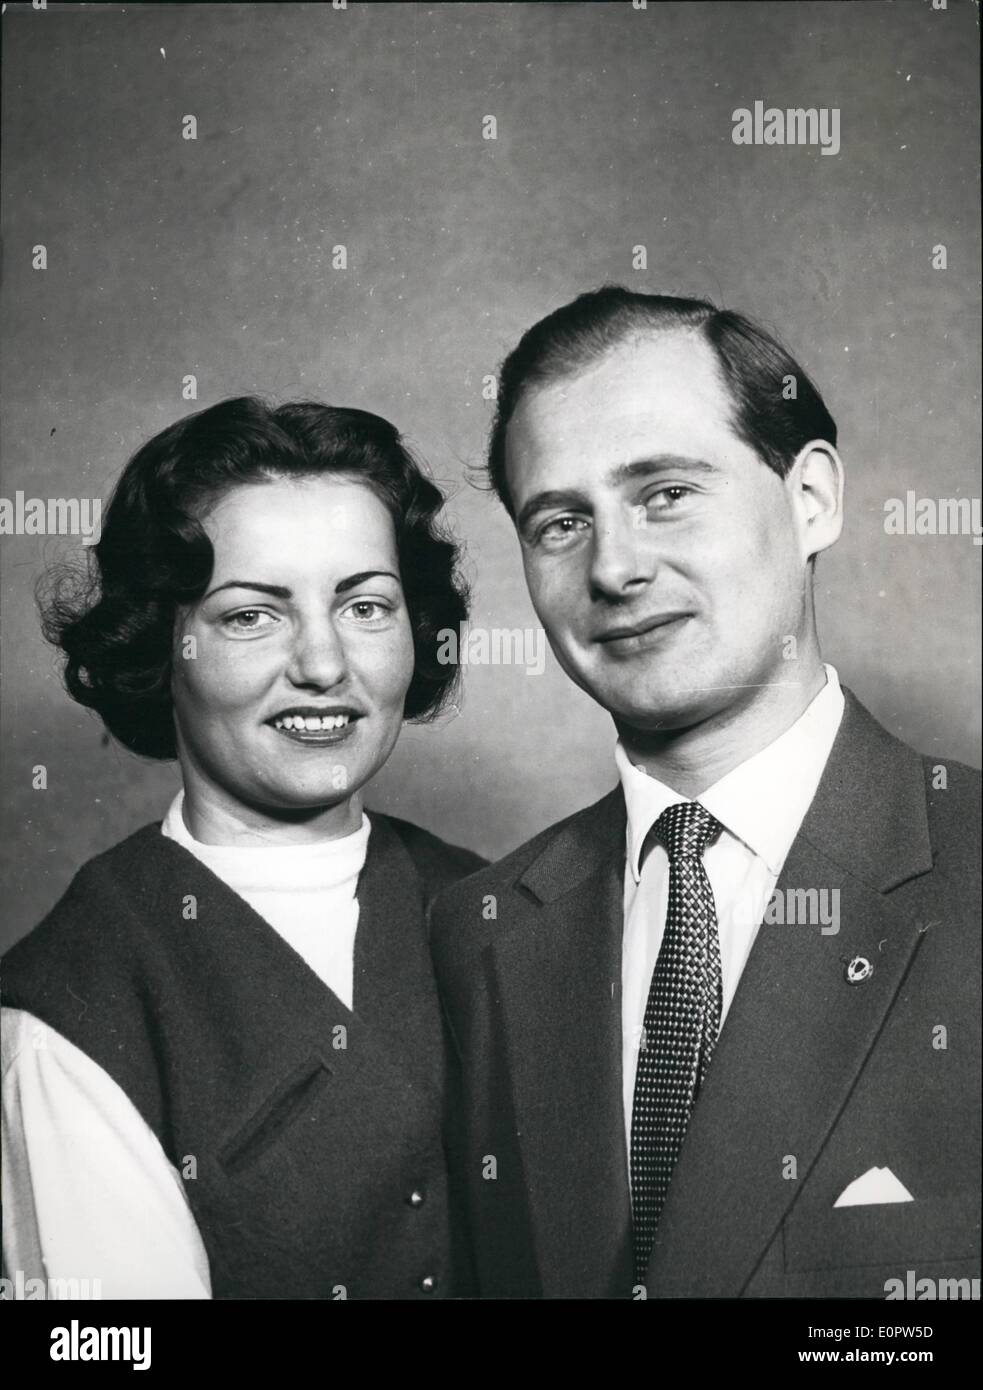 1. Januar 1957 - am Freitag (11.1.57) nach Hannover Prinz Constantin von Schaumburg-Lippe und seine Frau Sigried Knape ihrer Hochzeit Reise zurück. Das Paar heiratete vor einiger Zeit in aller Stille. Sigried Knape war Sekretär und kamen nach Hannover nach dem Krieg als Flüchtling aus Schlisien. Stockfoto